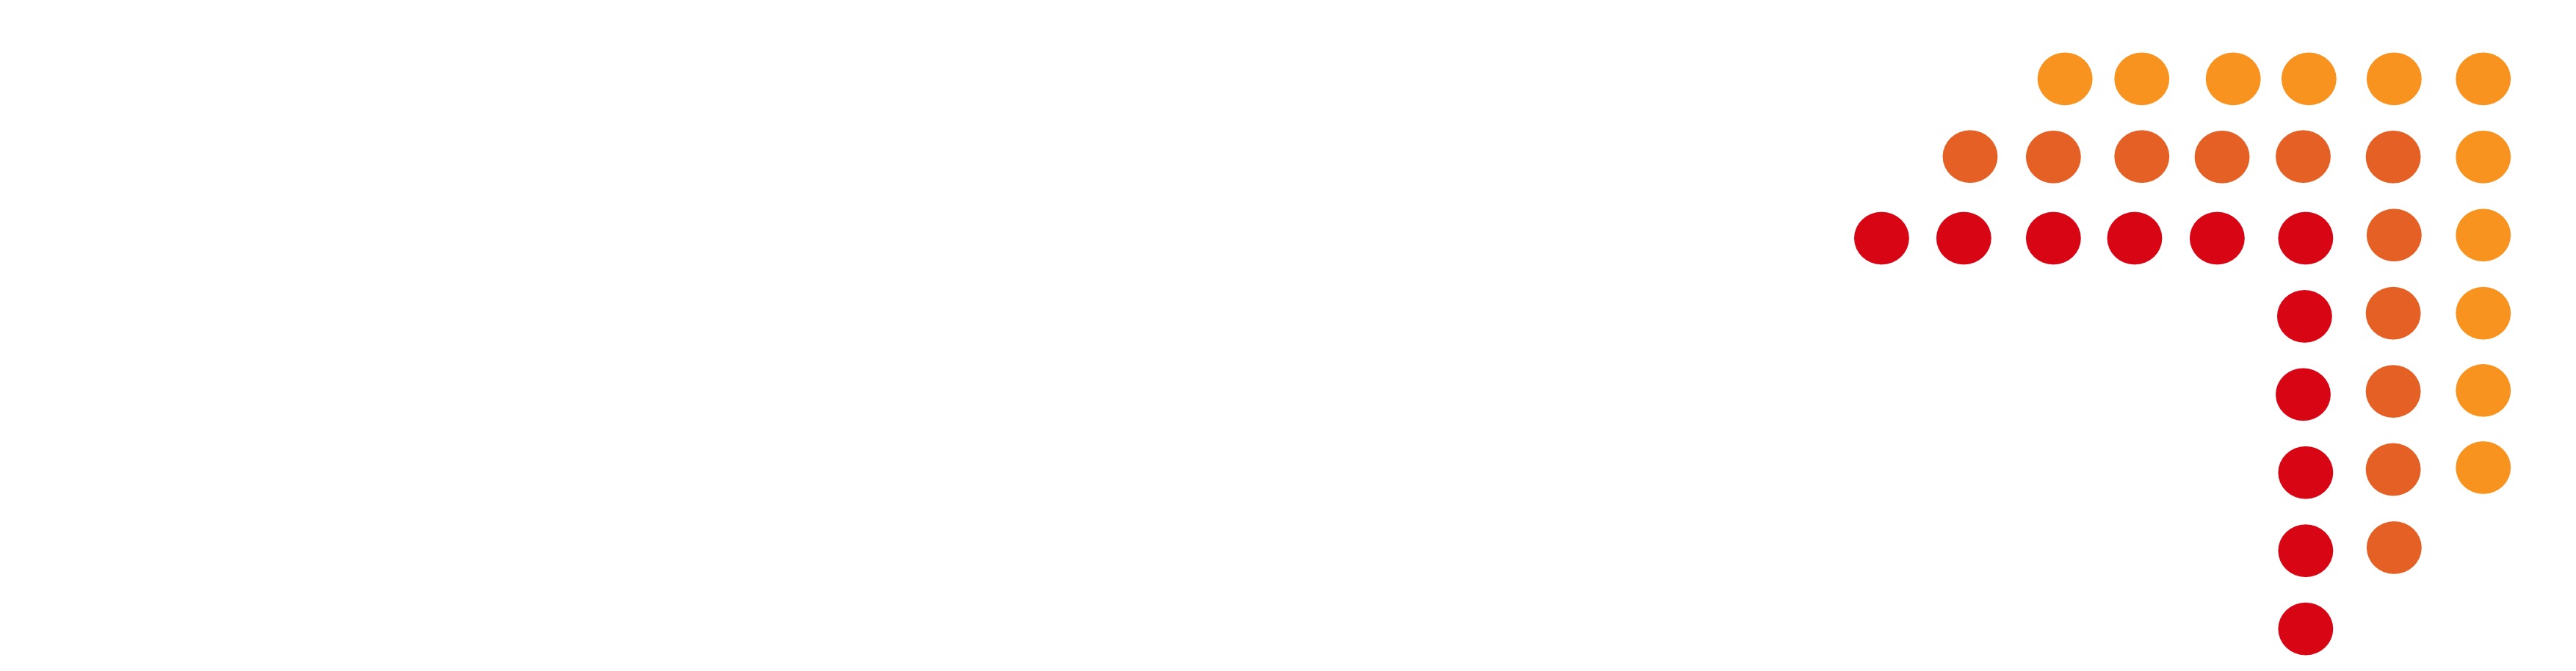 Westcotec logo